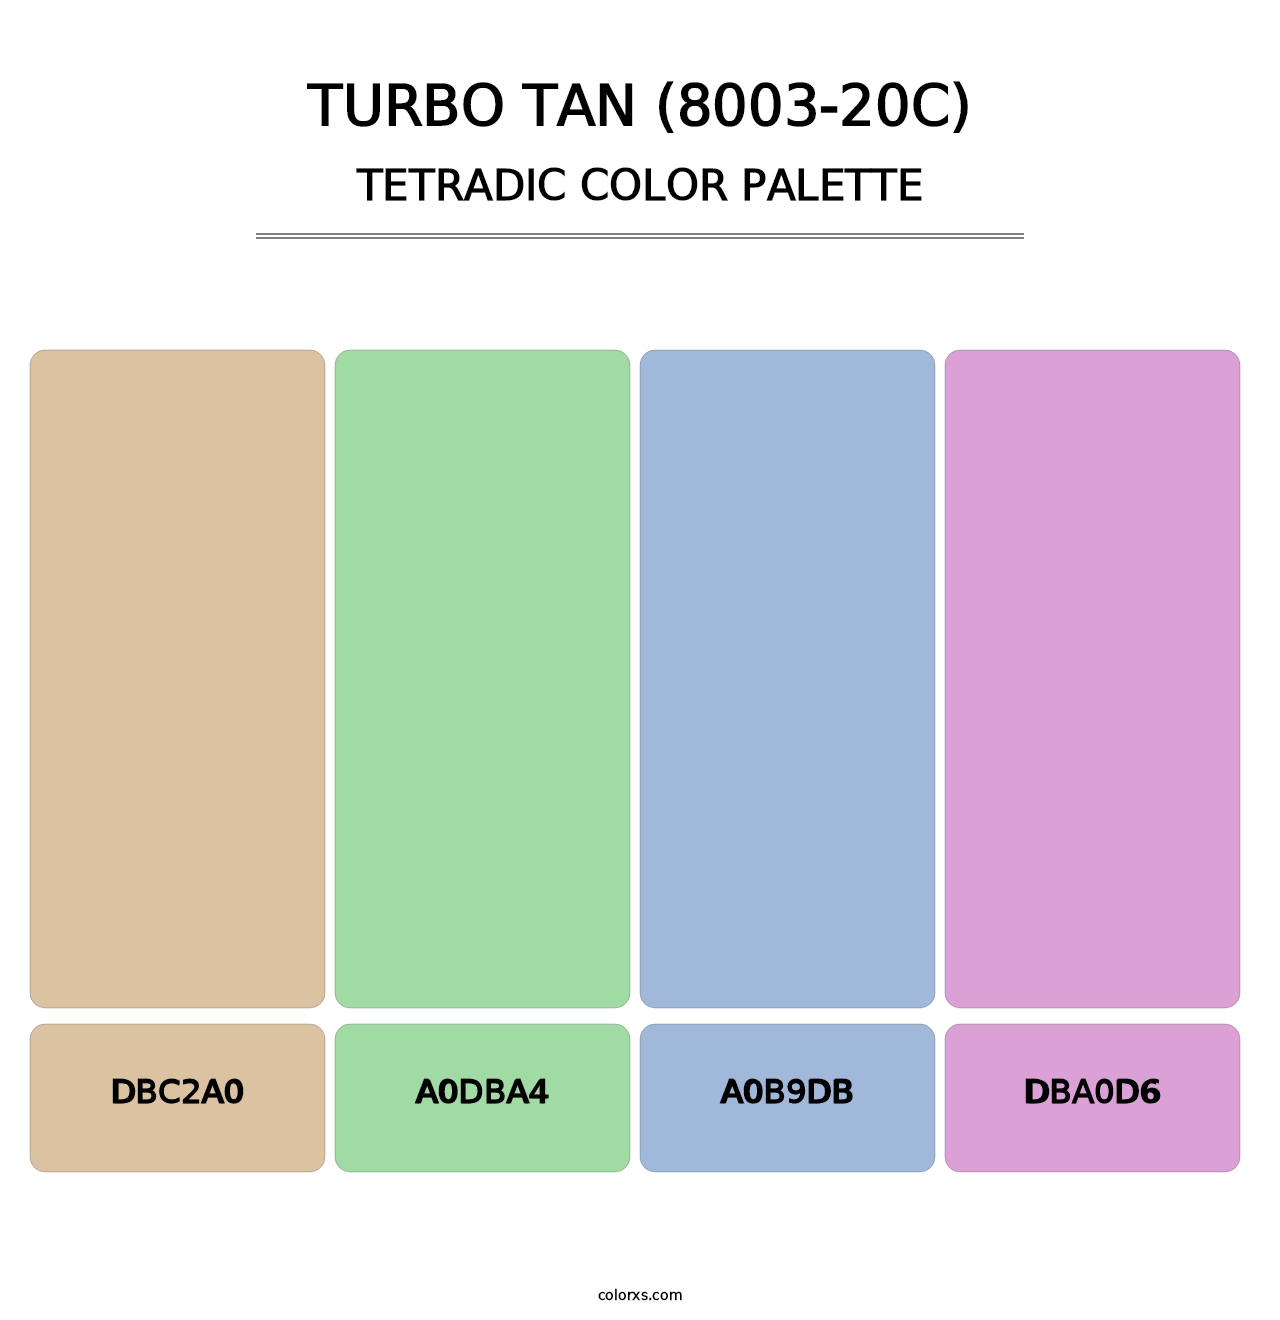 Turbo Tan (8003-20C) - Tetradic Color Palette